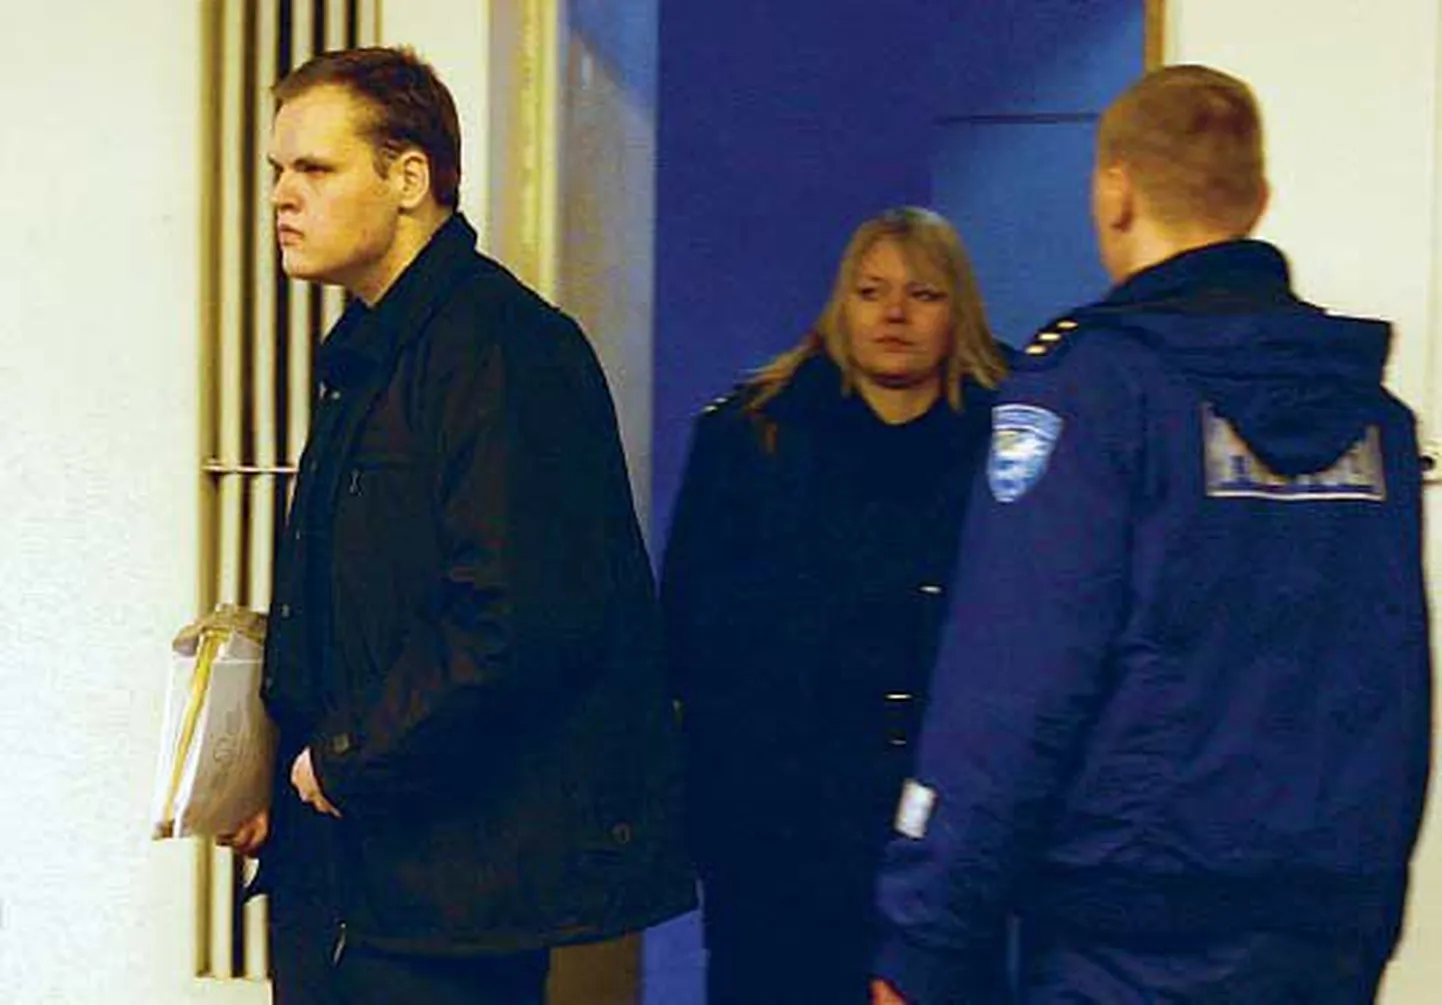 Eile mõrva eest 12 aastaks vangi mõistetud Markus Pasi Pönkä ja tema tapetud sõber Keijo Petri Mikael Salo tegemisi uuritakse ka mitme pettusejuhtumiga seoses.